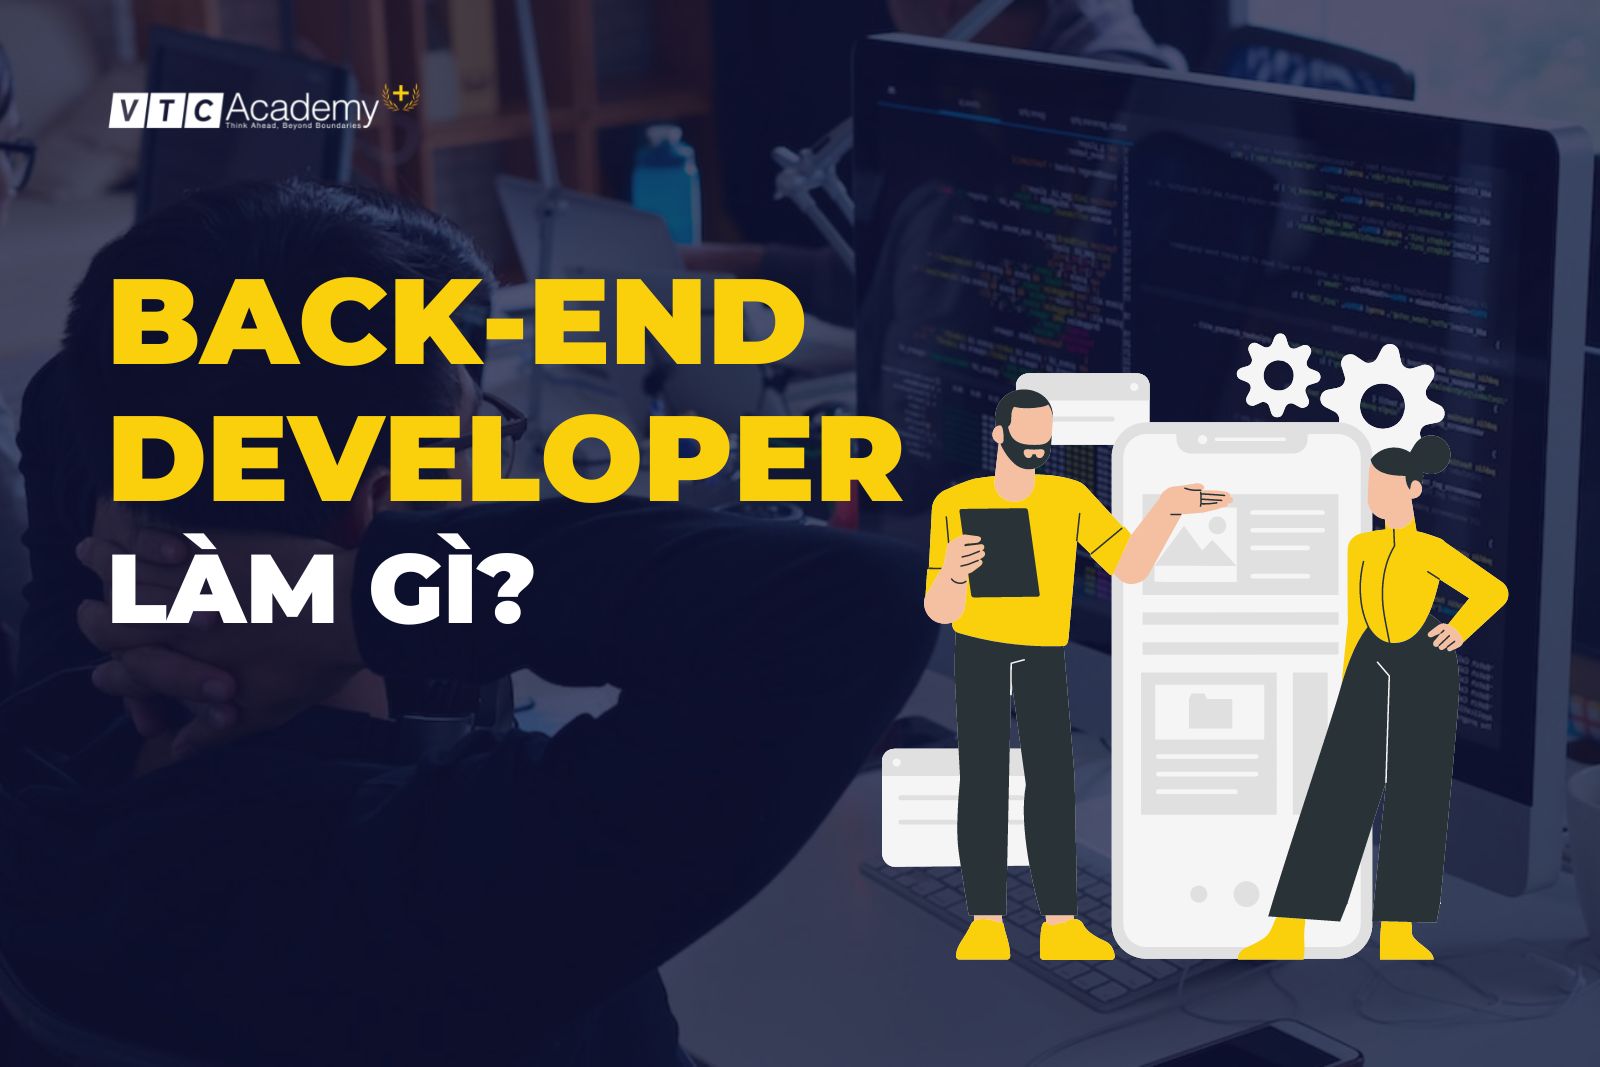 Backend Developer chuyên nghiệp: Backend Developer chuyên nghiệp là những người có kinh nghiệm và bản lĩnh trong việc xử lý dữ liệu trên trang web. Với những kiến thức chuyên sâu của họ, việc xây dựng một trang web đẹp, chắc chắn, và ổn định trở nên dễ dàng hơn bao giờ hết. Hãy xem hình ảnh để hiểu thêm về Backend Developer chuyên nghiệp.